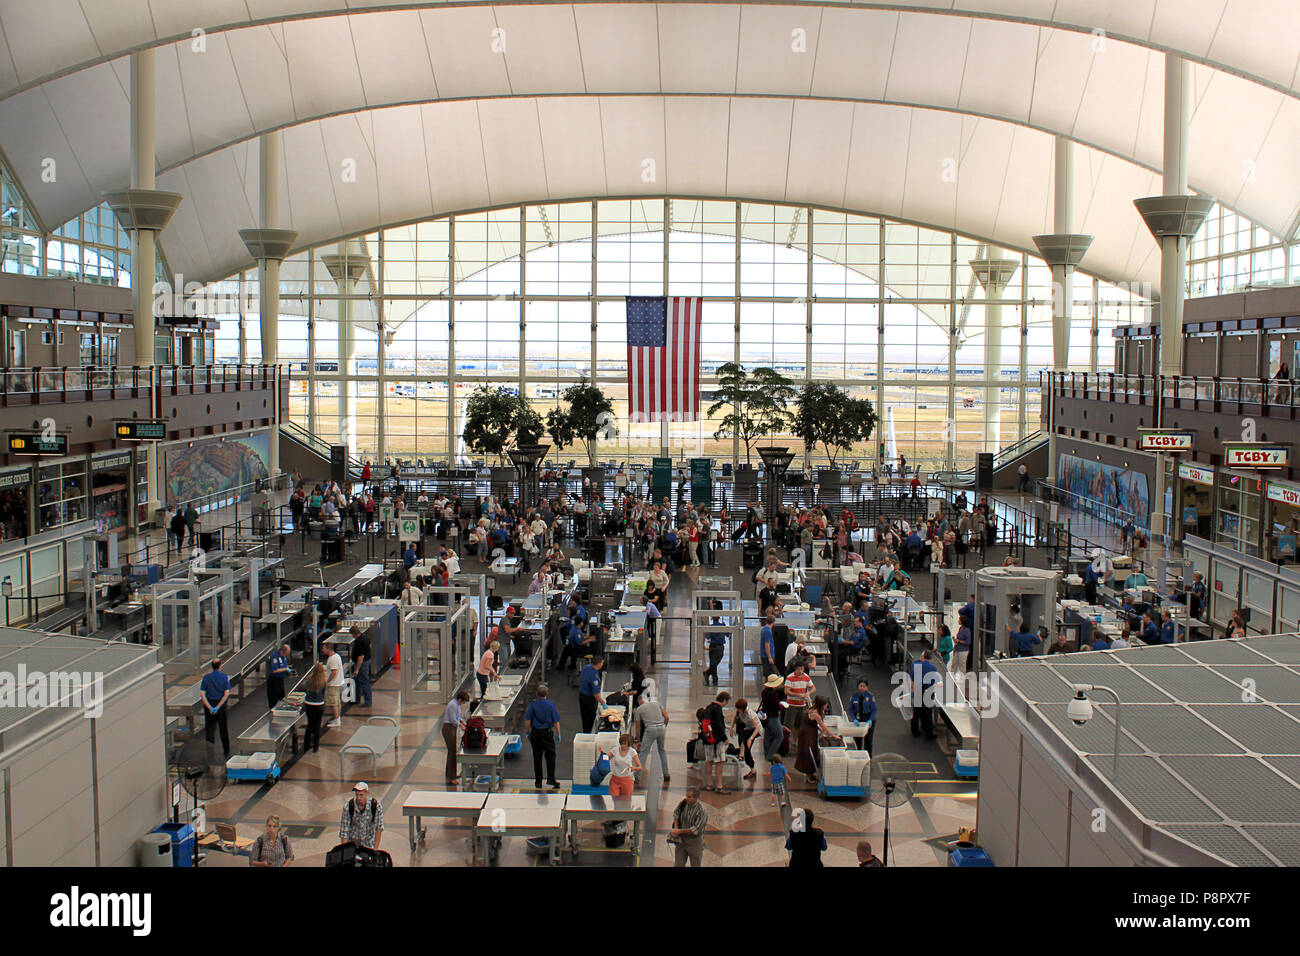 Redaktionelles Konzept zu Flughäfen, Terminals, Sicherheit am Flughafen, urlaub reisen, reisen Saison ähnliche Stockfoto